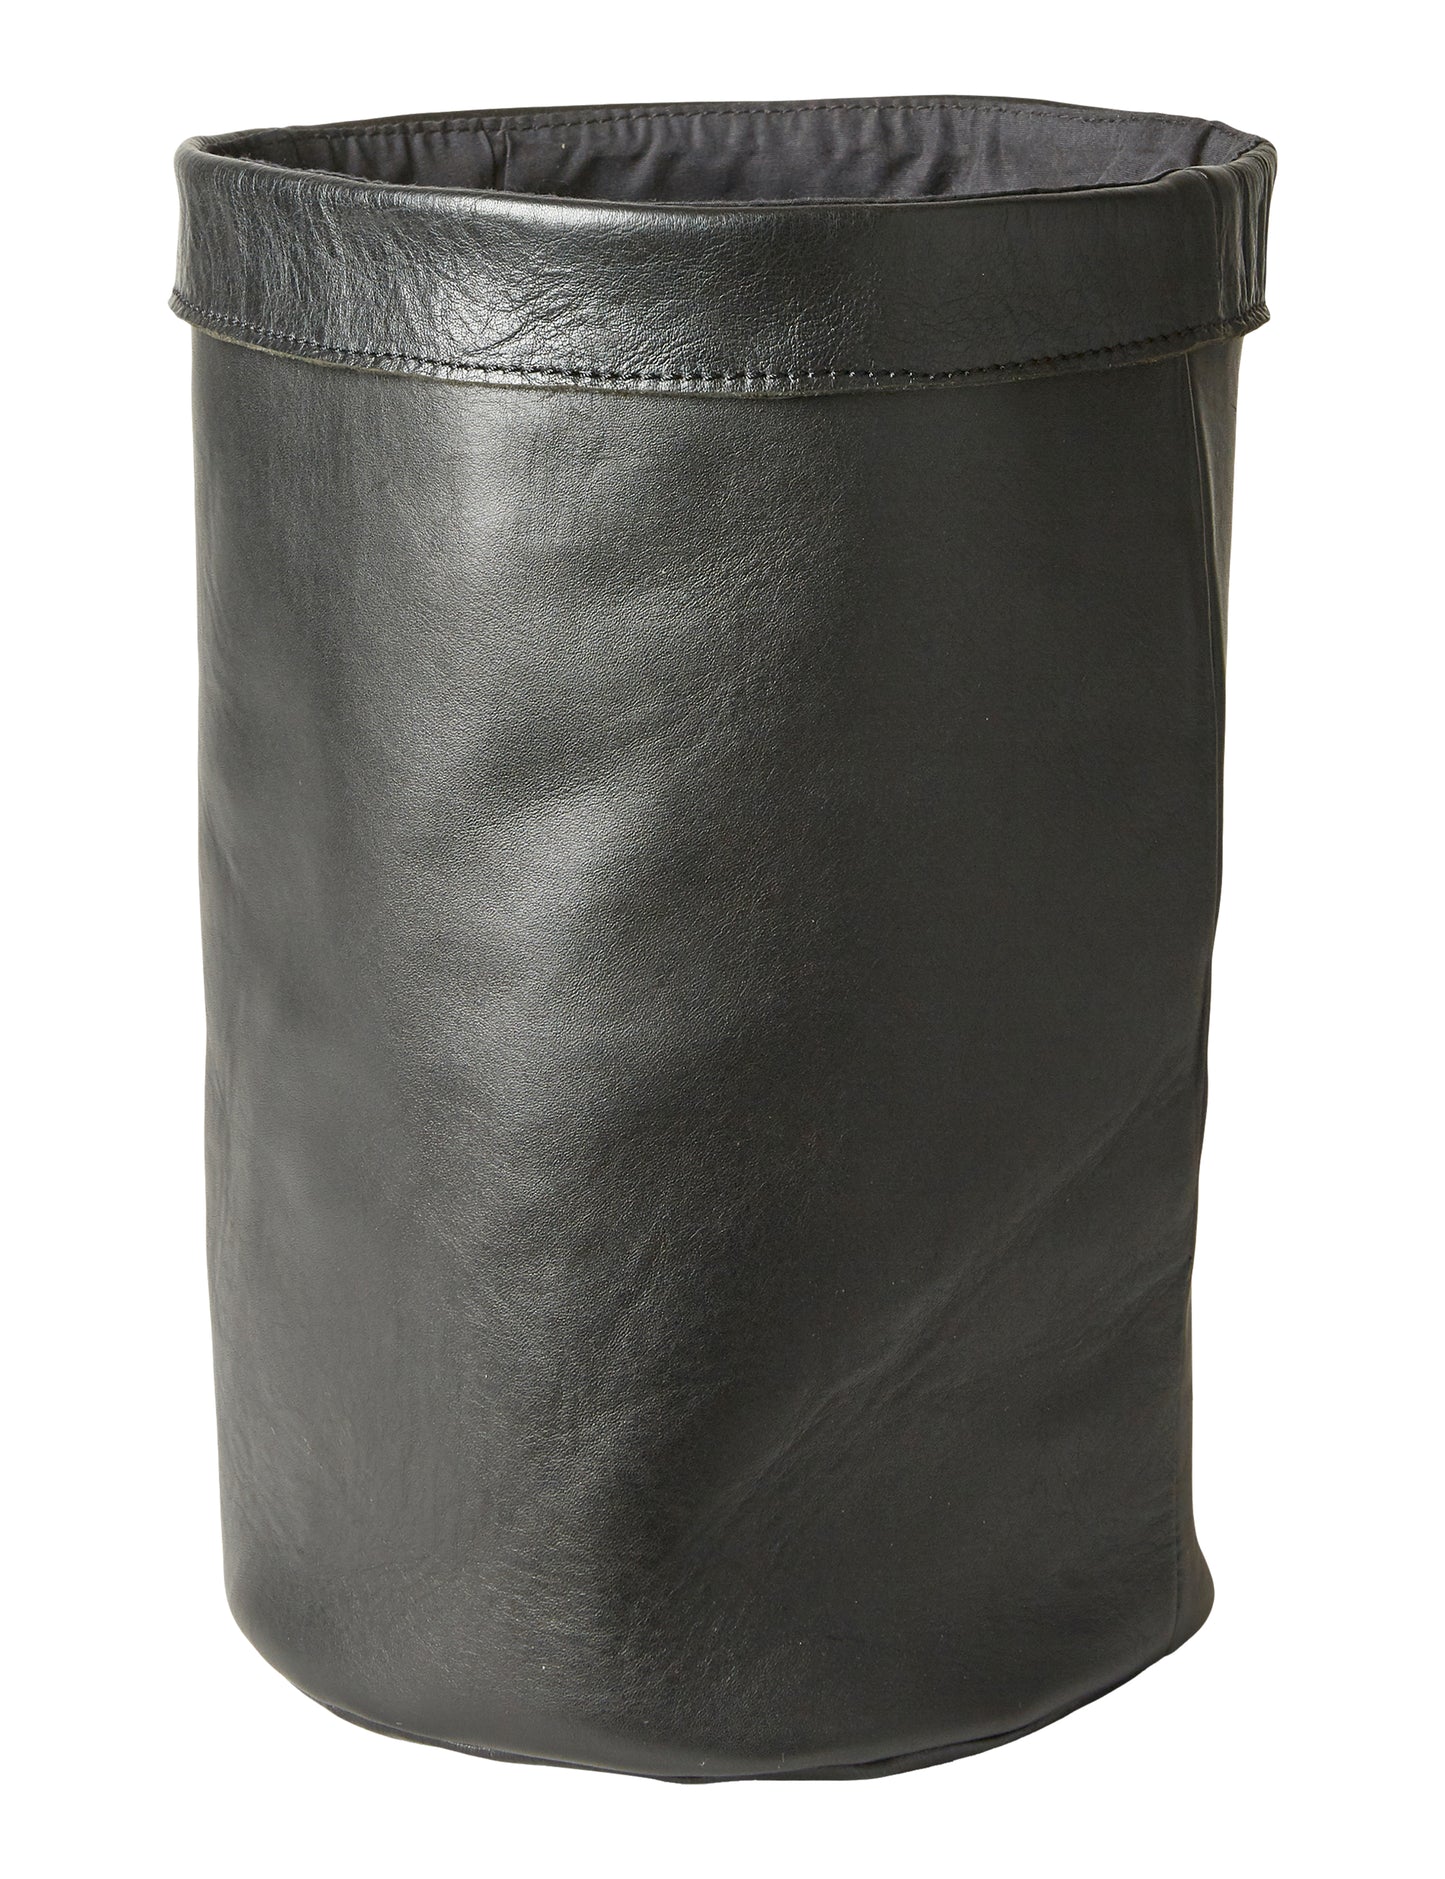 læderpose - bøffelæder sort 20x30cm